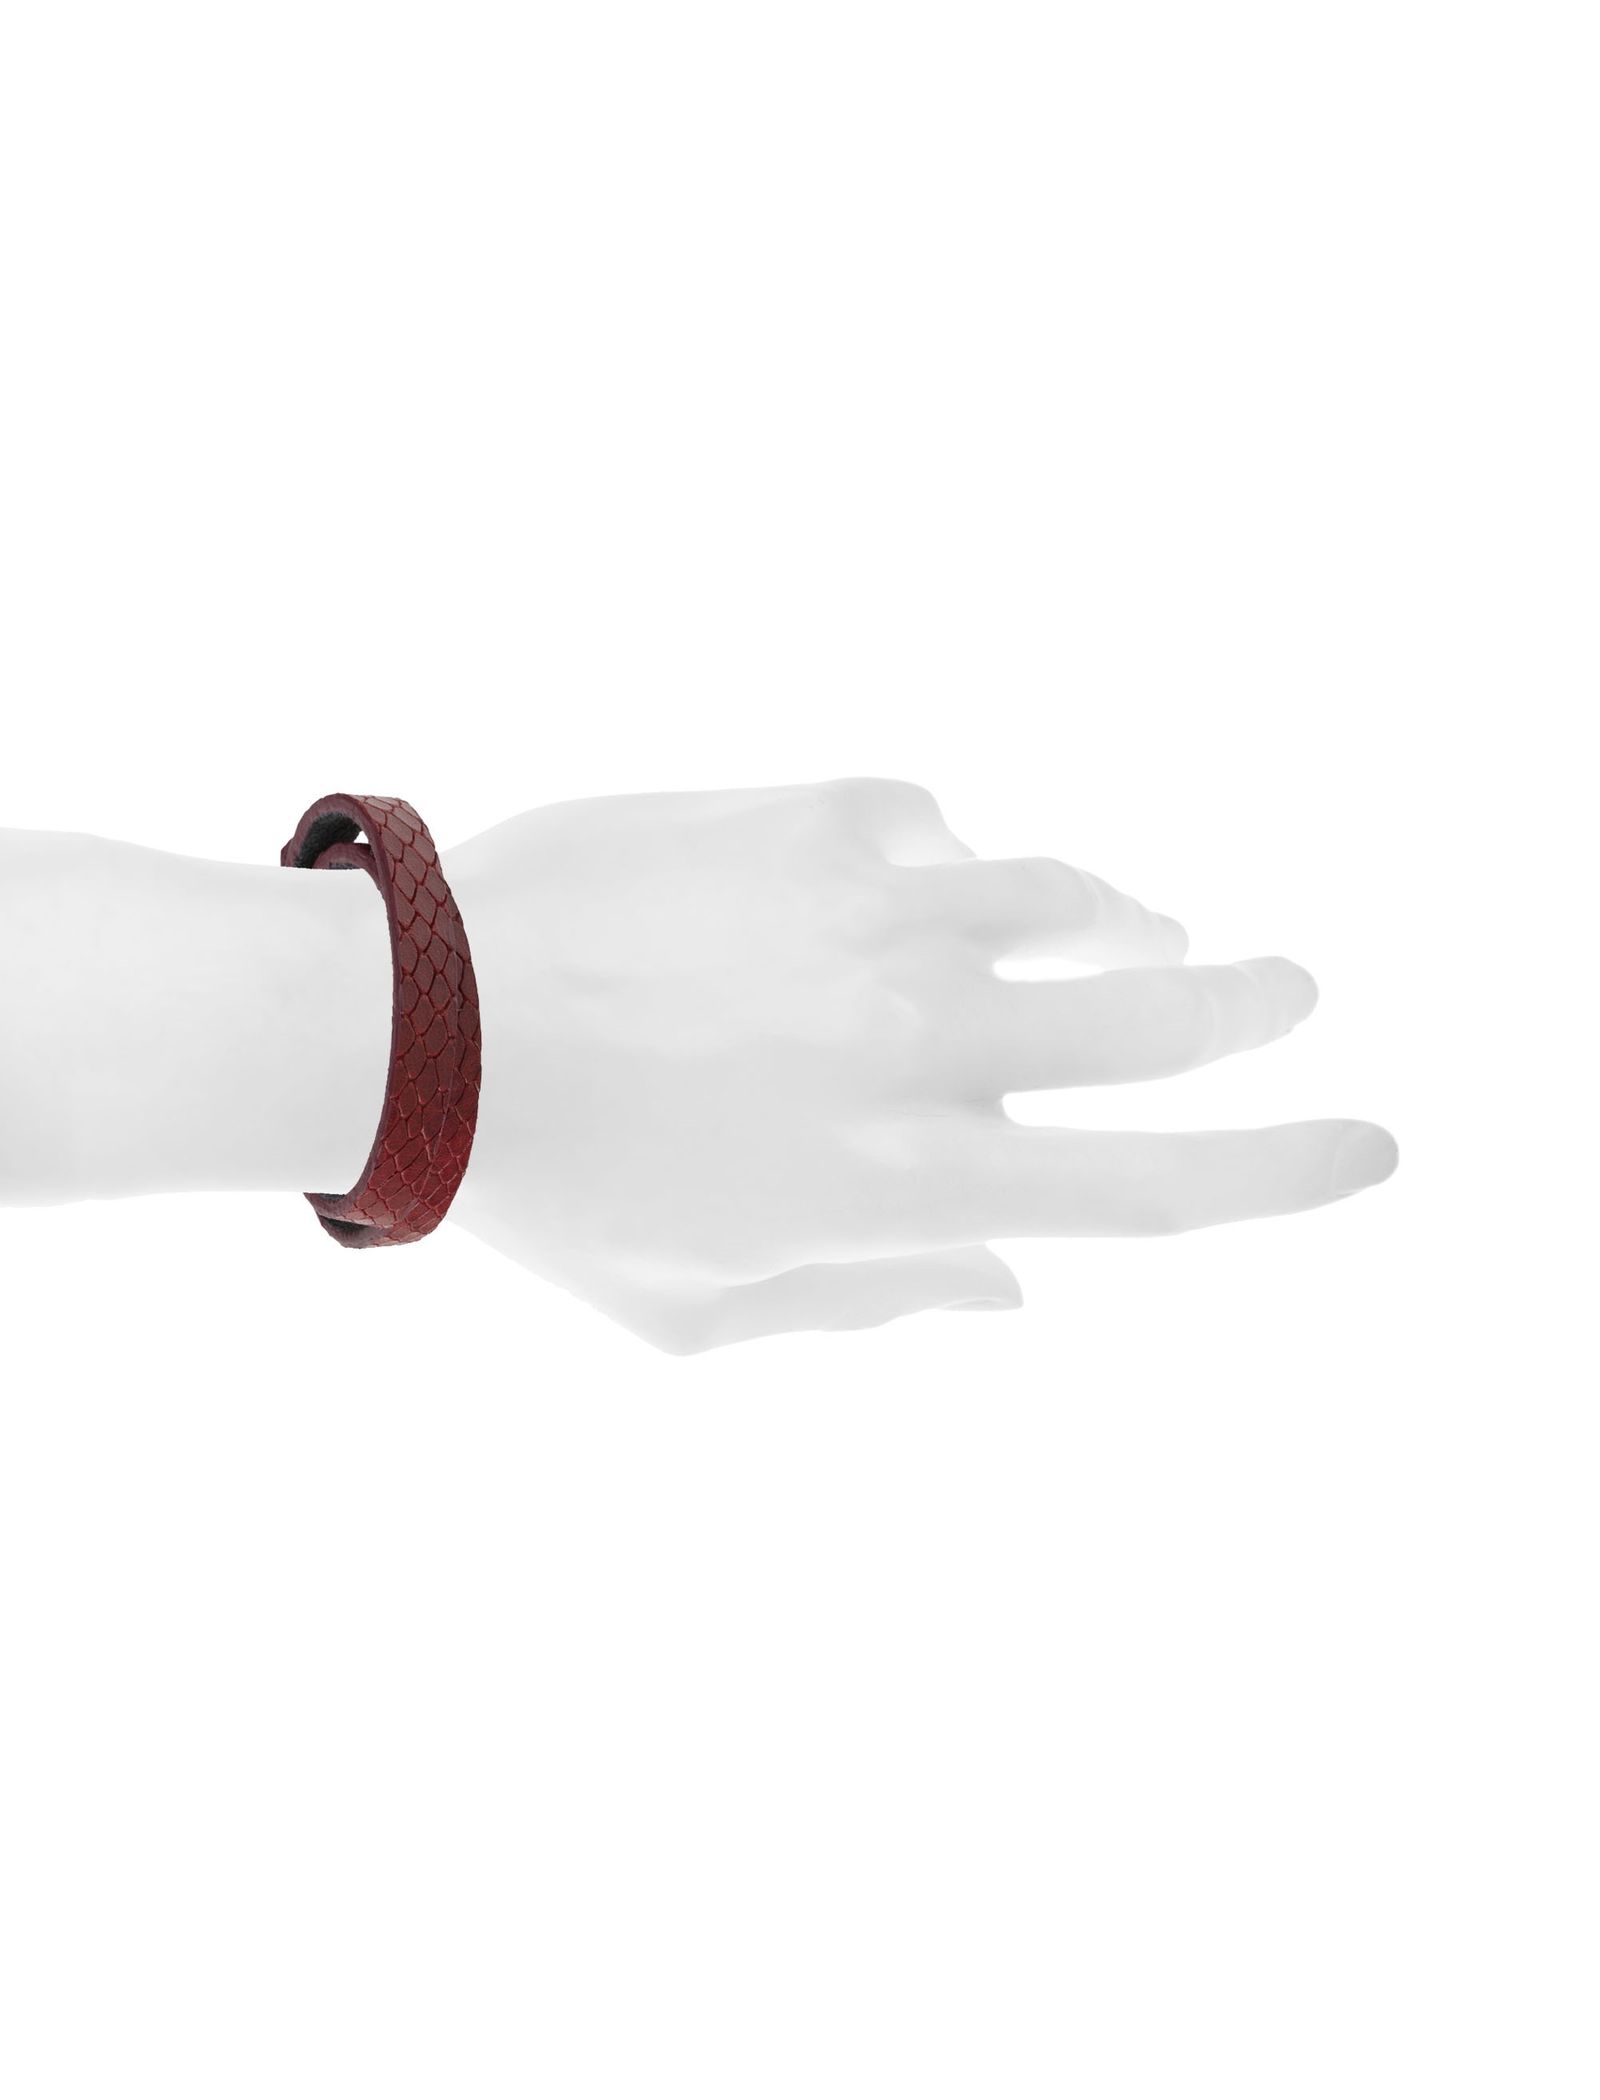 دستبند چرم زنانه - ماکو دیزاین تک سایز - قرمز - 6